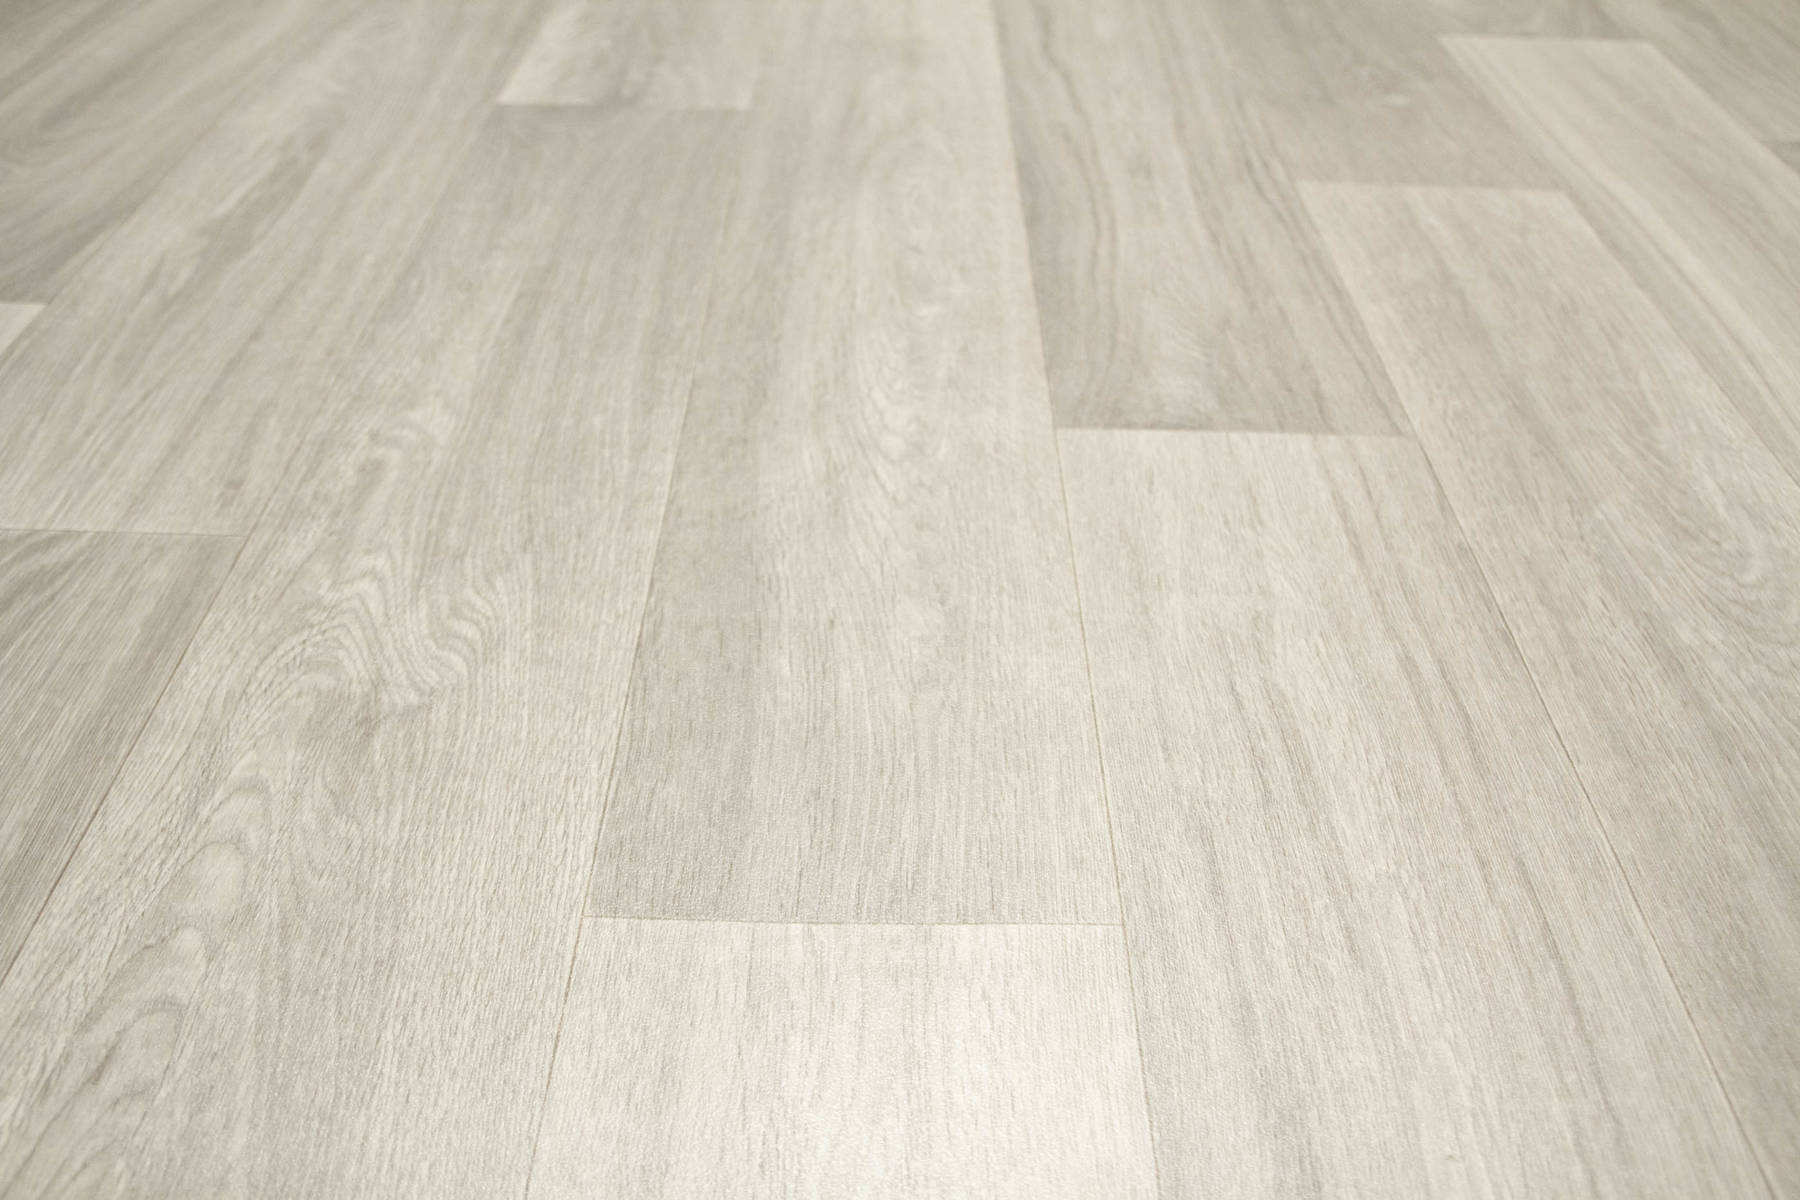 PVC podlaha Inspire Pure Oak 719M - šedá / béžová / krémová